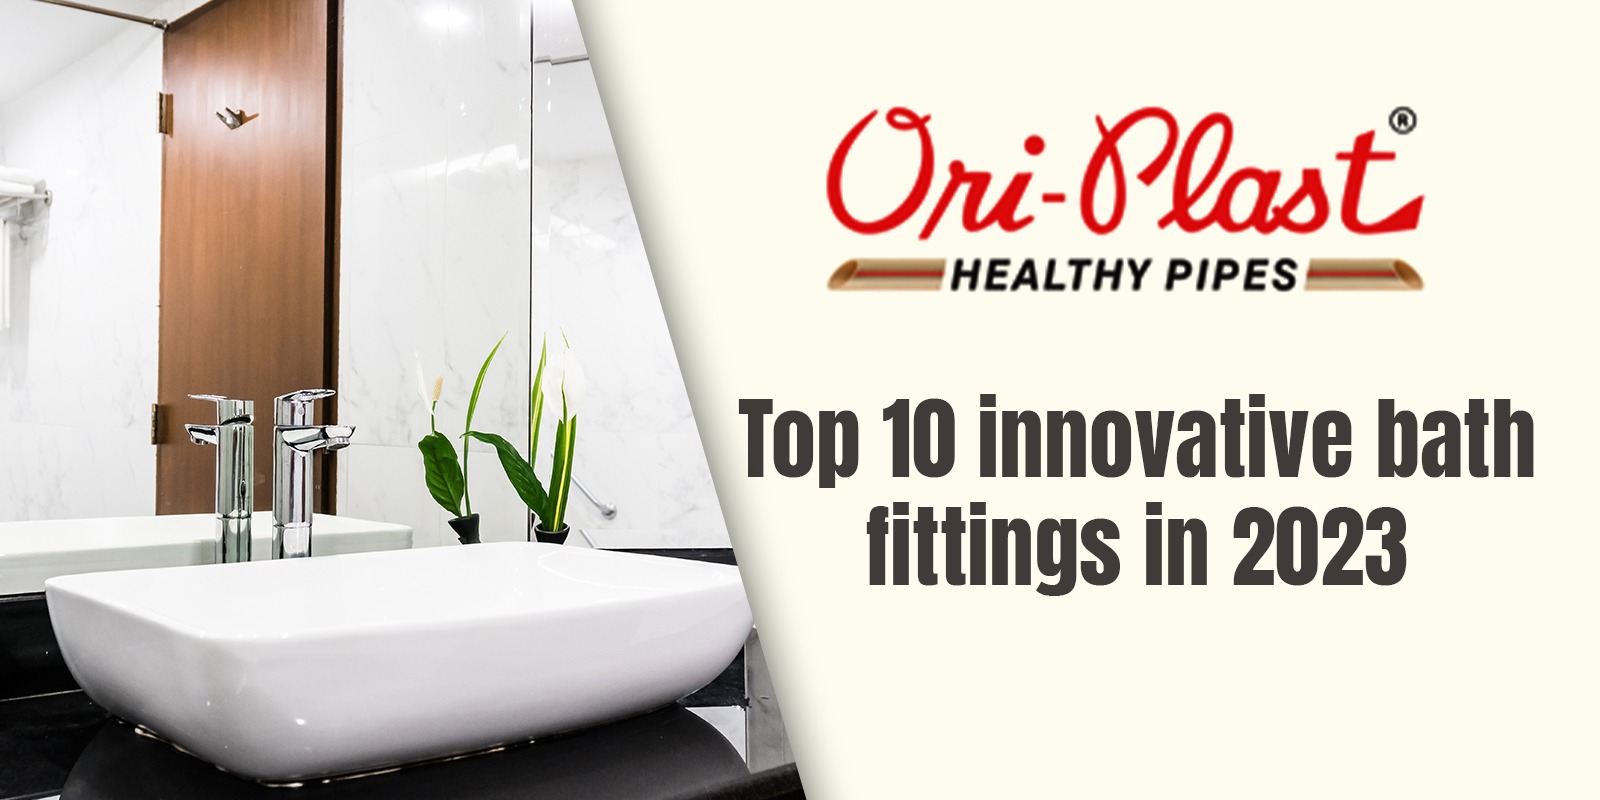 Top 10 innovative bath fittings Oriplast